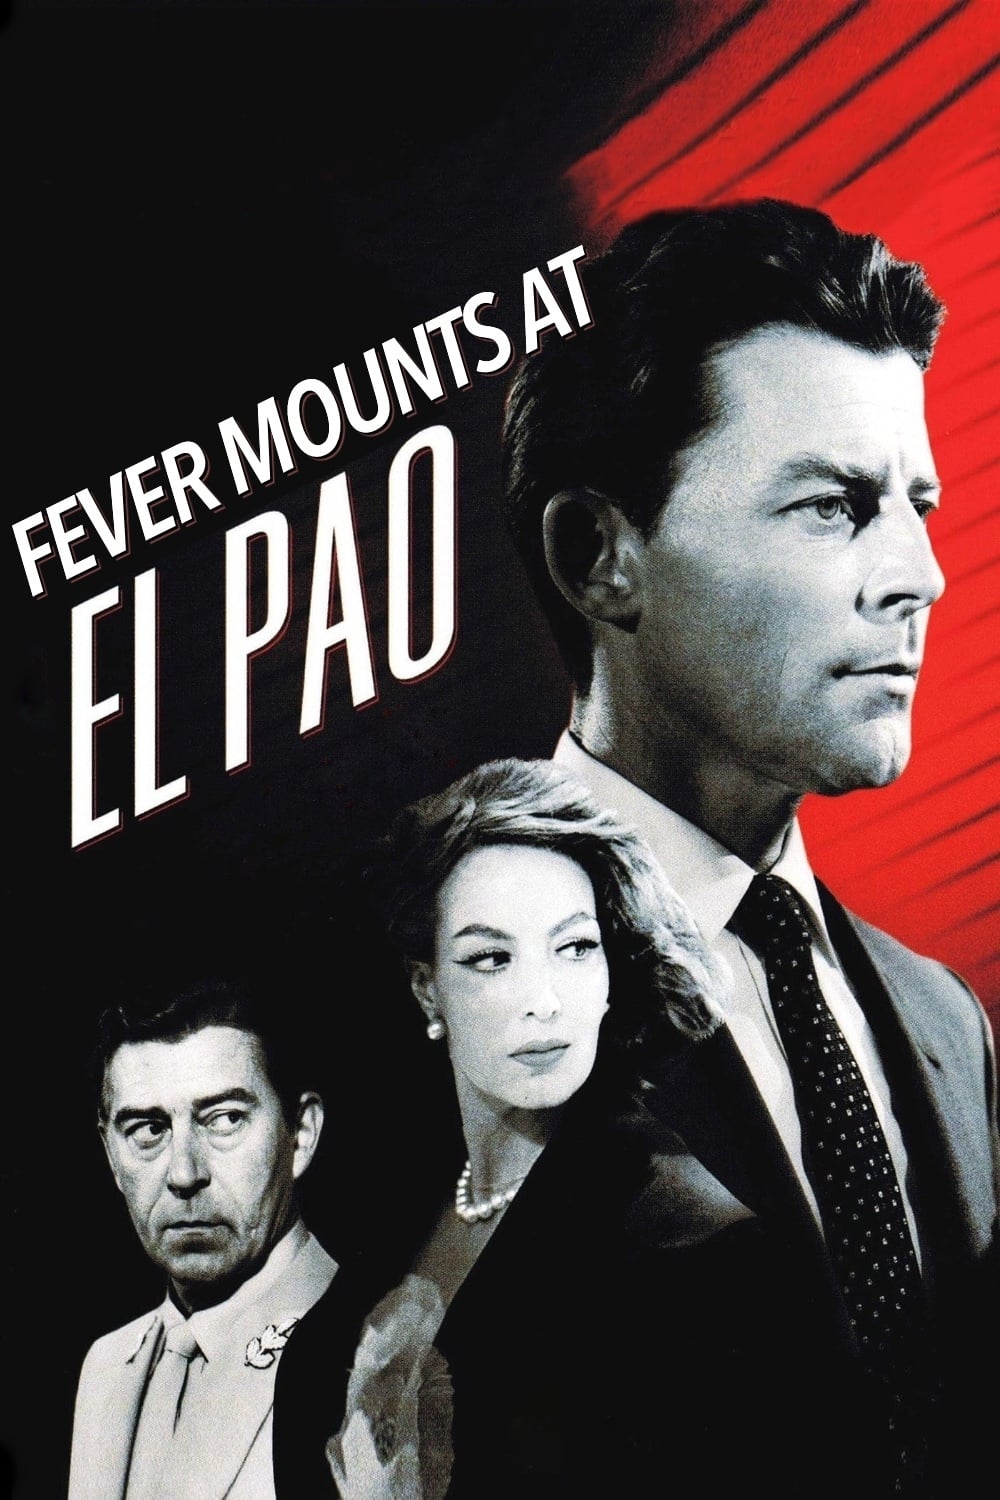 Fever Mounts at El Pao